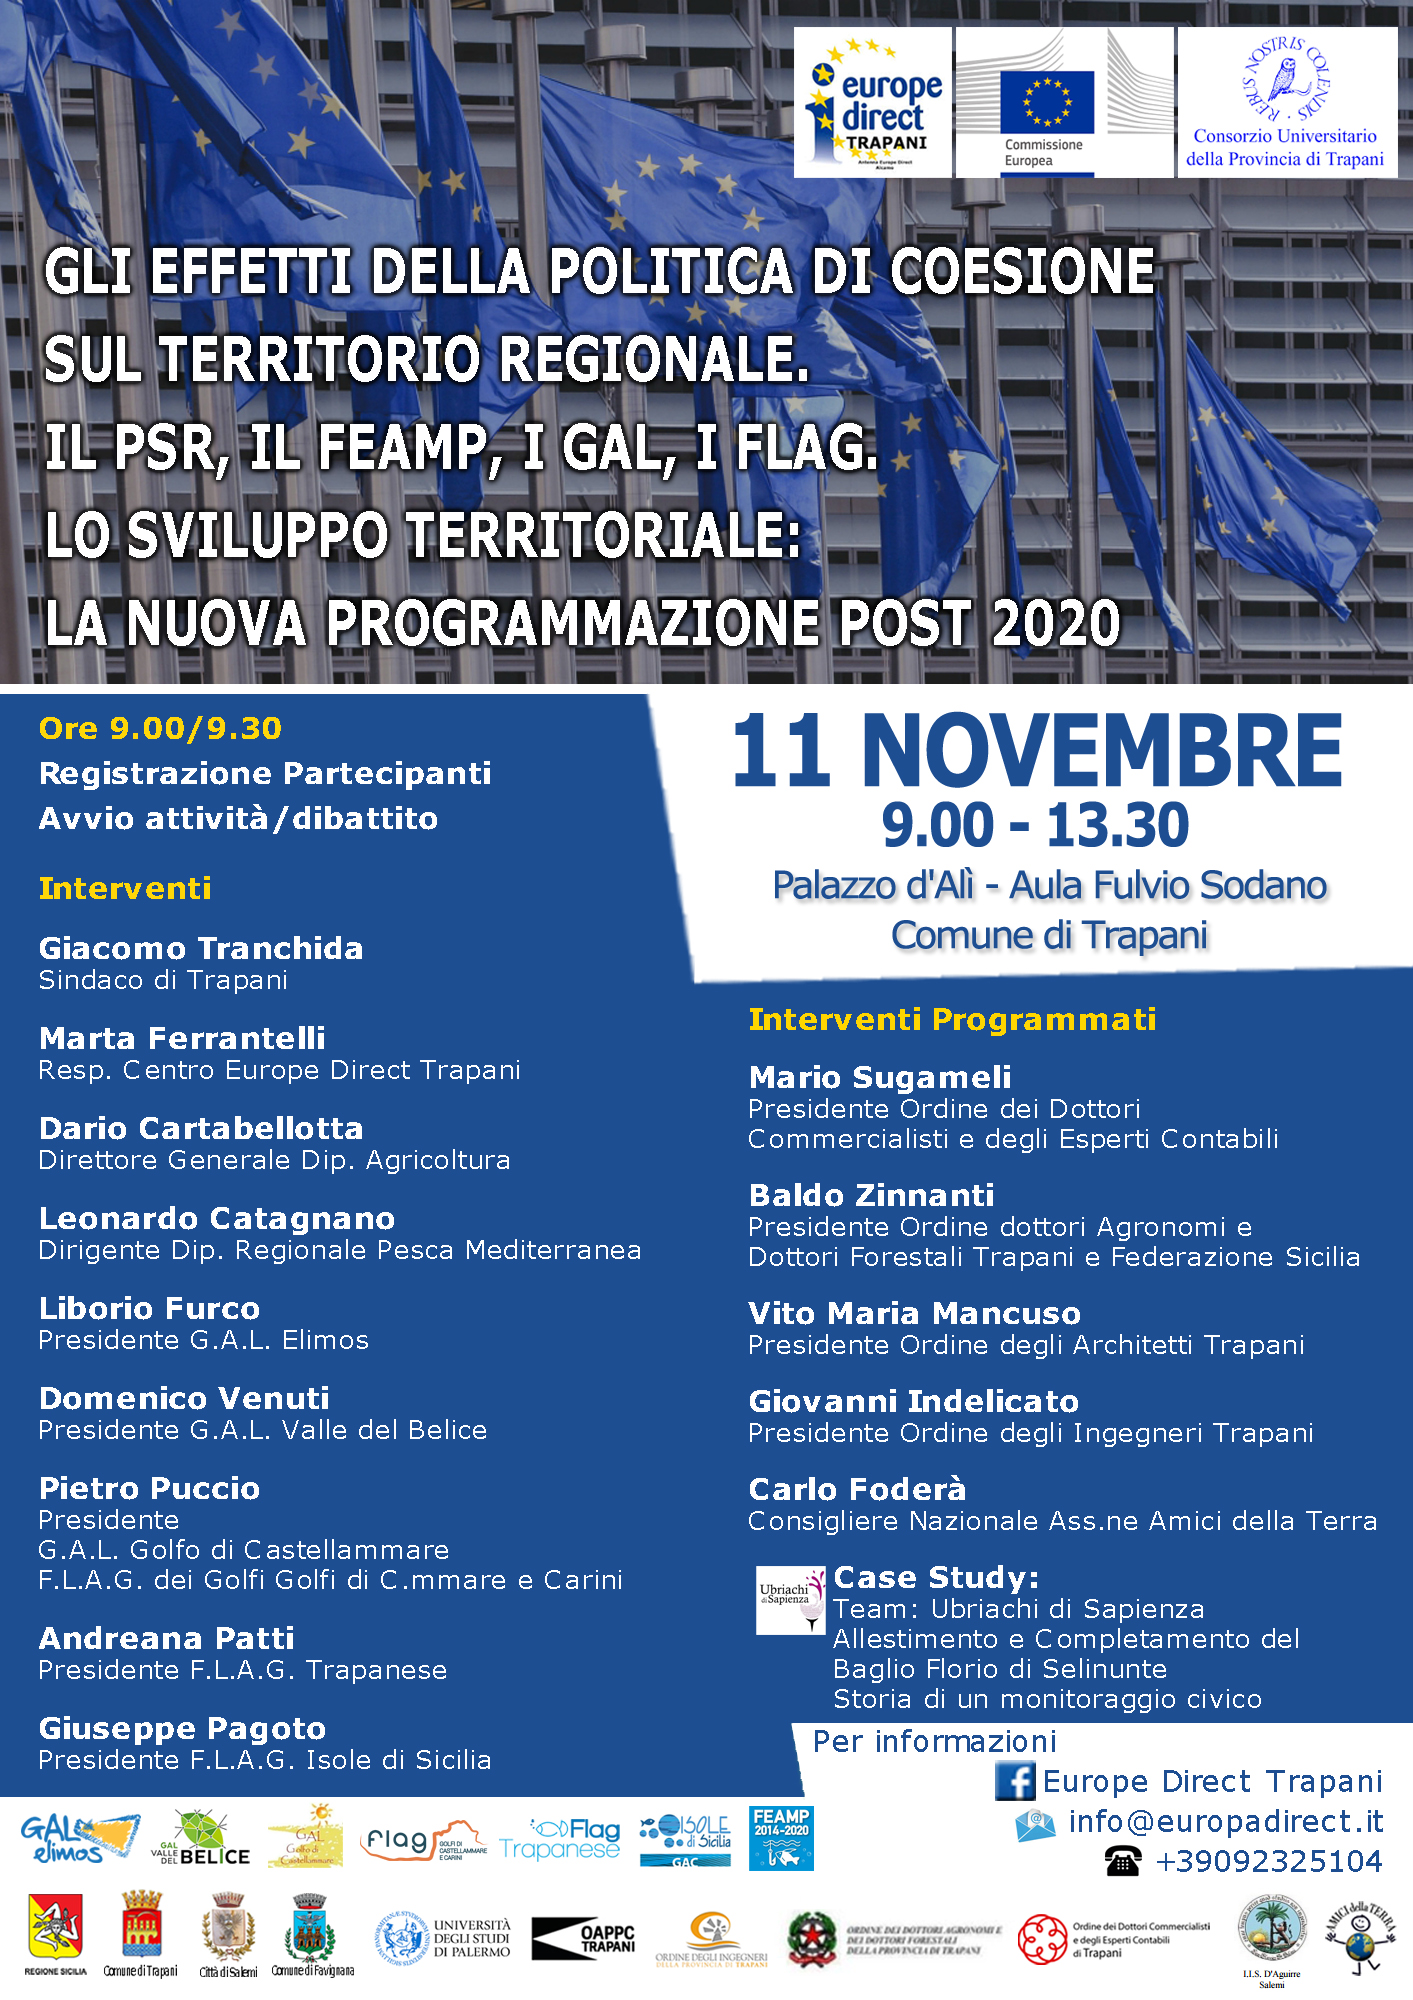 Gli effetti della politica di coesione sul territorio regionale, 11 novembre 2019 Palazzo d'Alì, Trapani